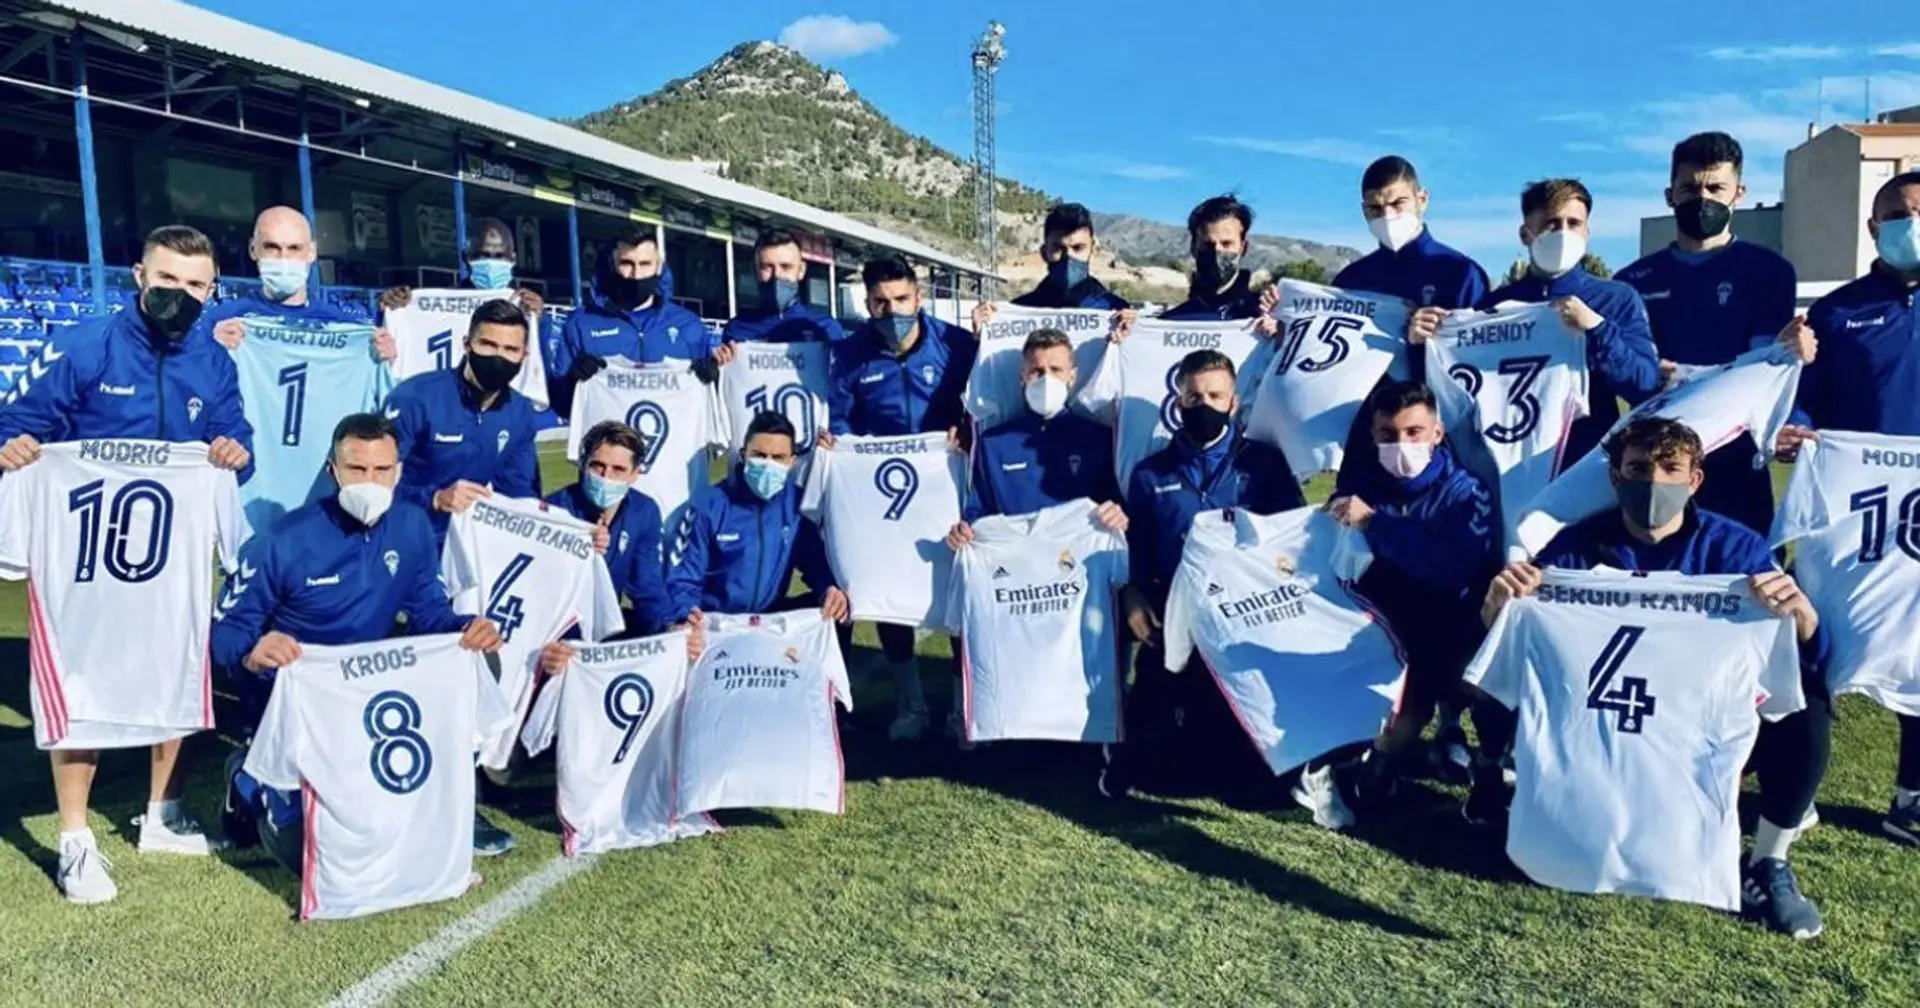 El Real Madrid regaló camisetas a la plantilla del Alcoyano tras el partido de Copa